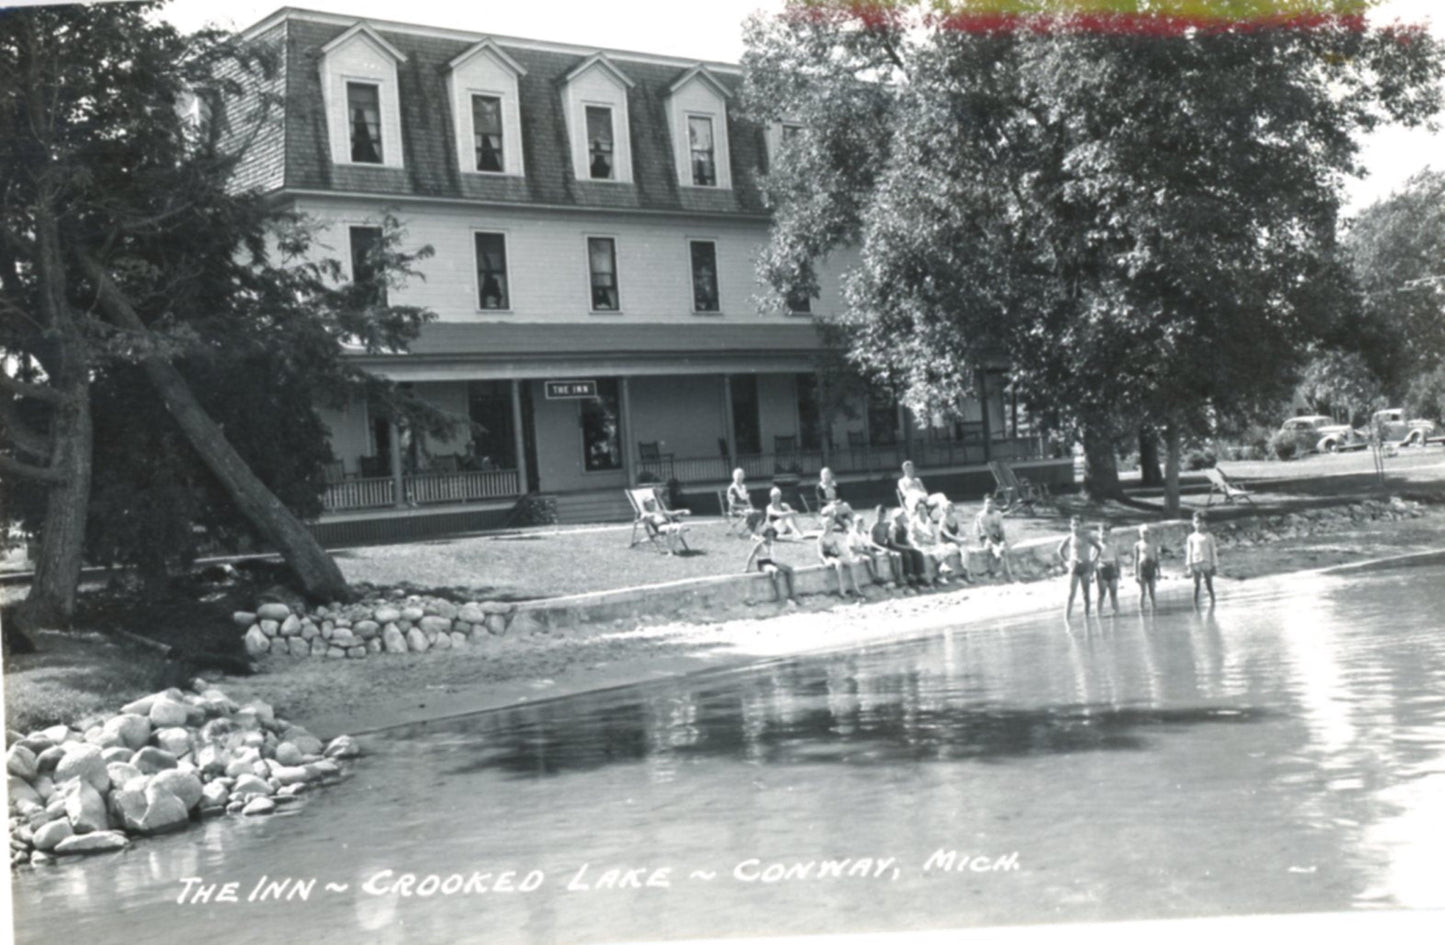 The Inn at Crooked Lake CONWAY MICHIGAN Vintage Real Photo Postcard